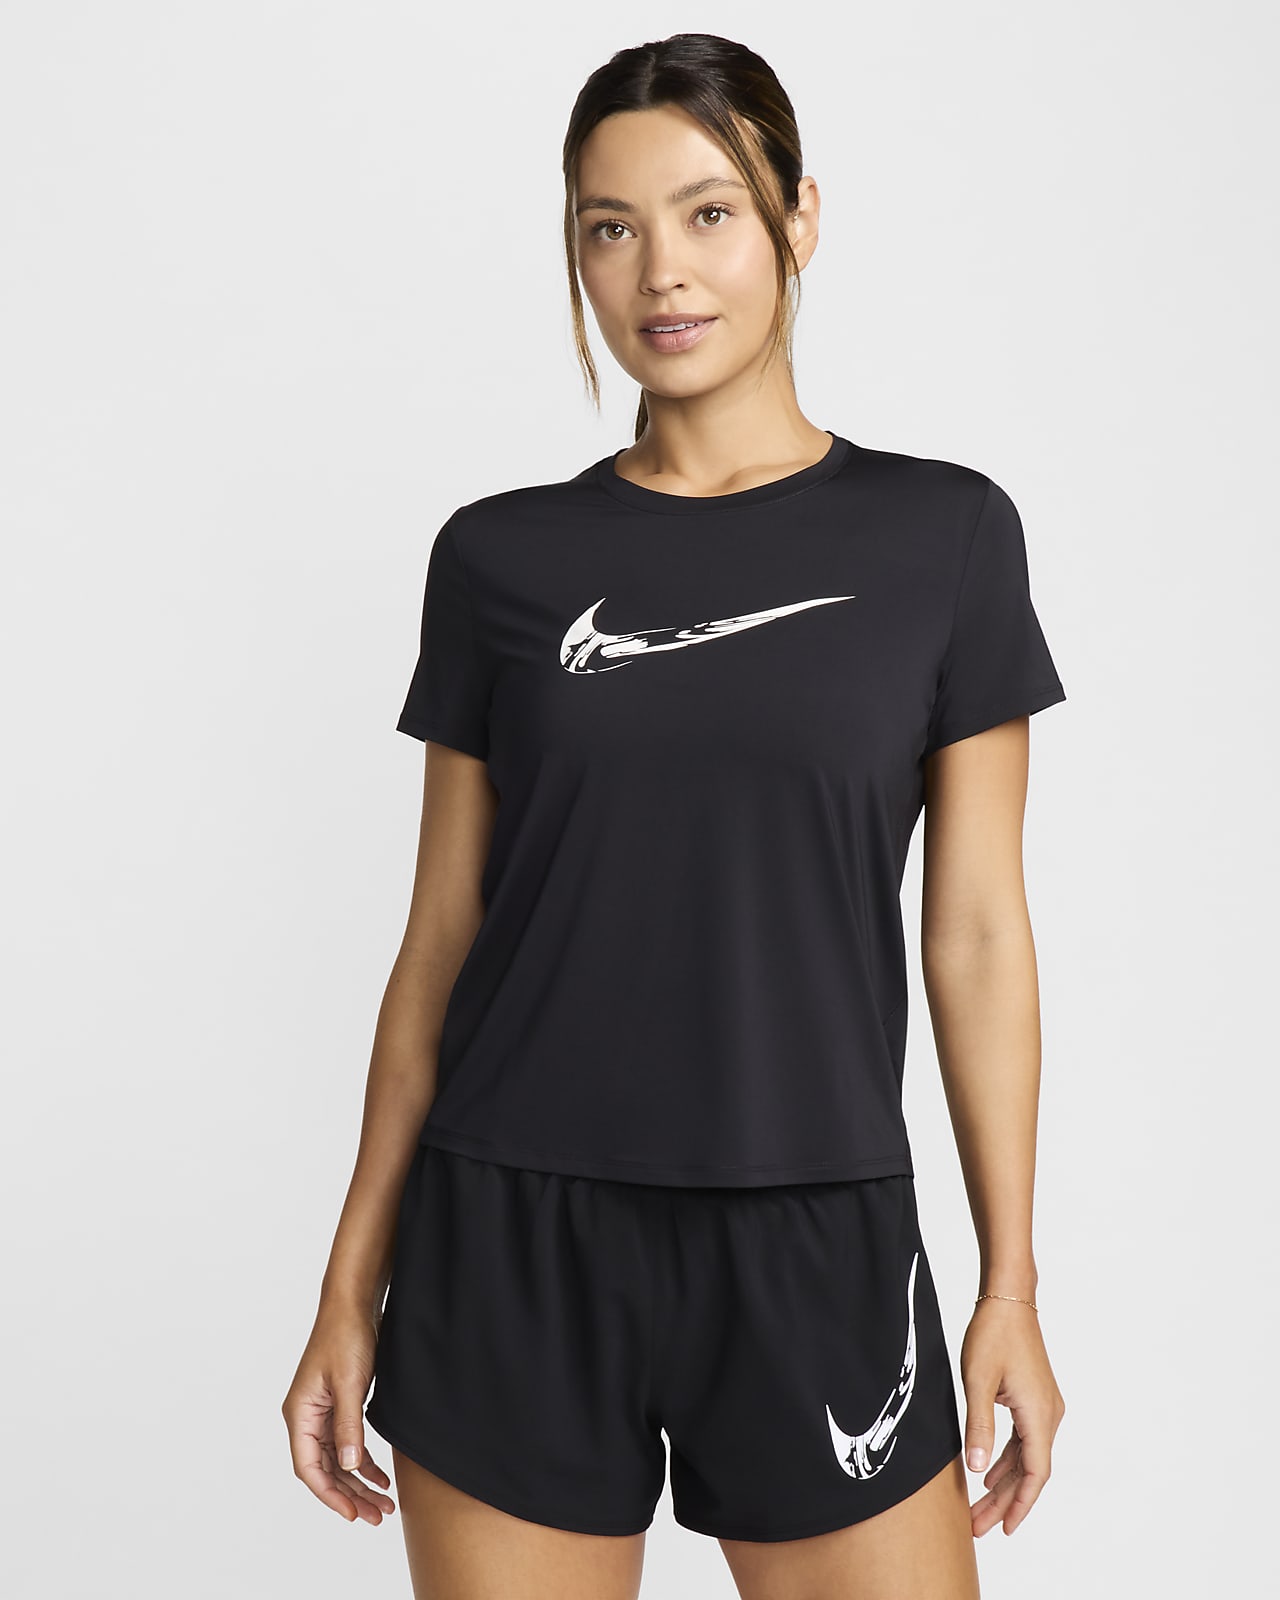 Nike One Parte de arriba de running de manga corta con estampado Dri-FIT - Mujer